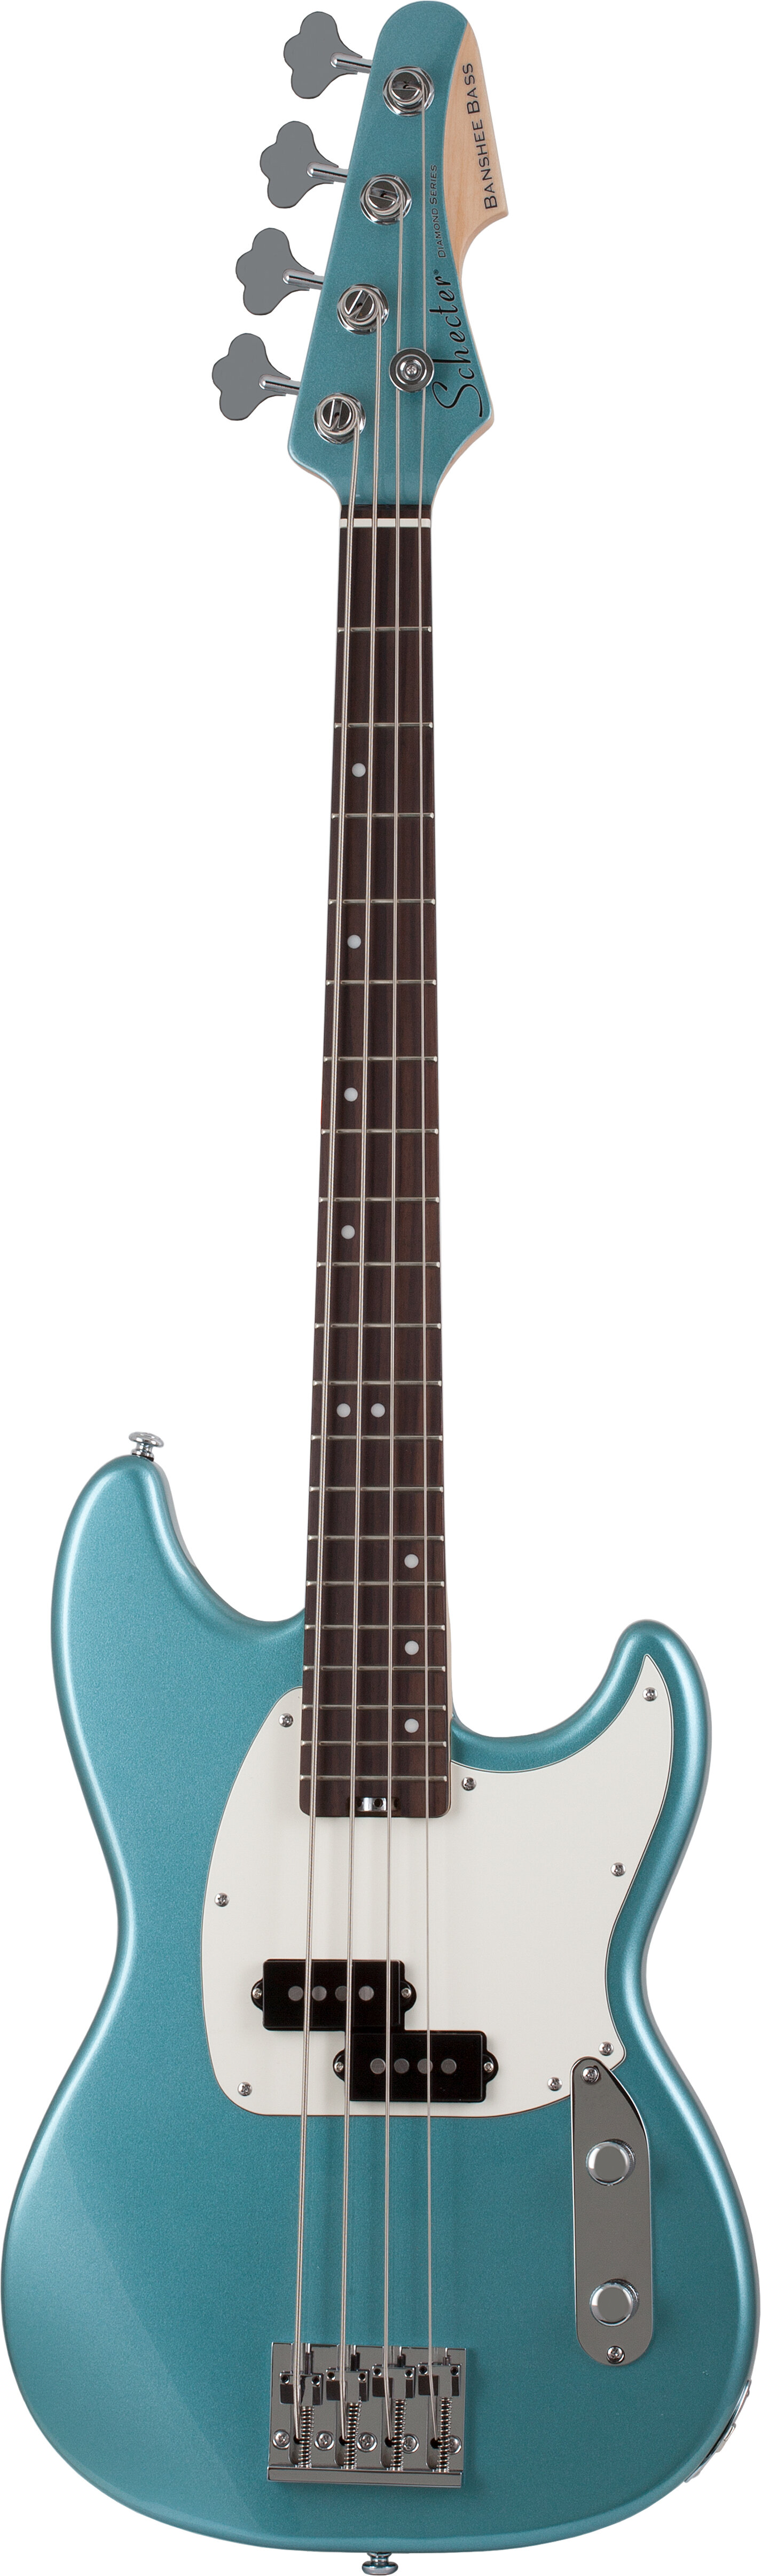 Schecter Banshee Bass Guitar Vintage Pelham Blue -  1441